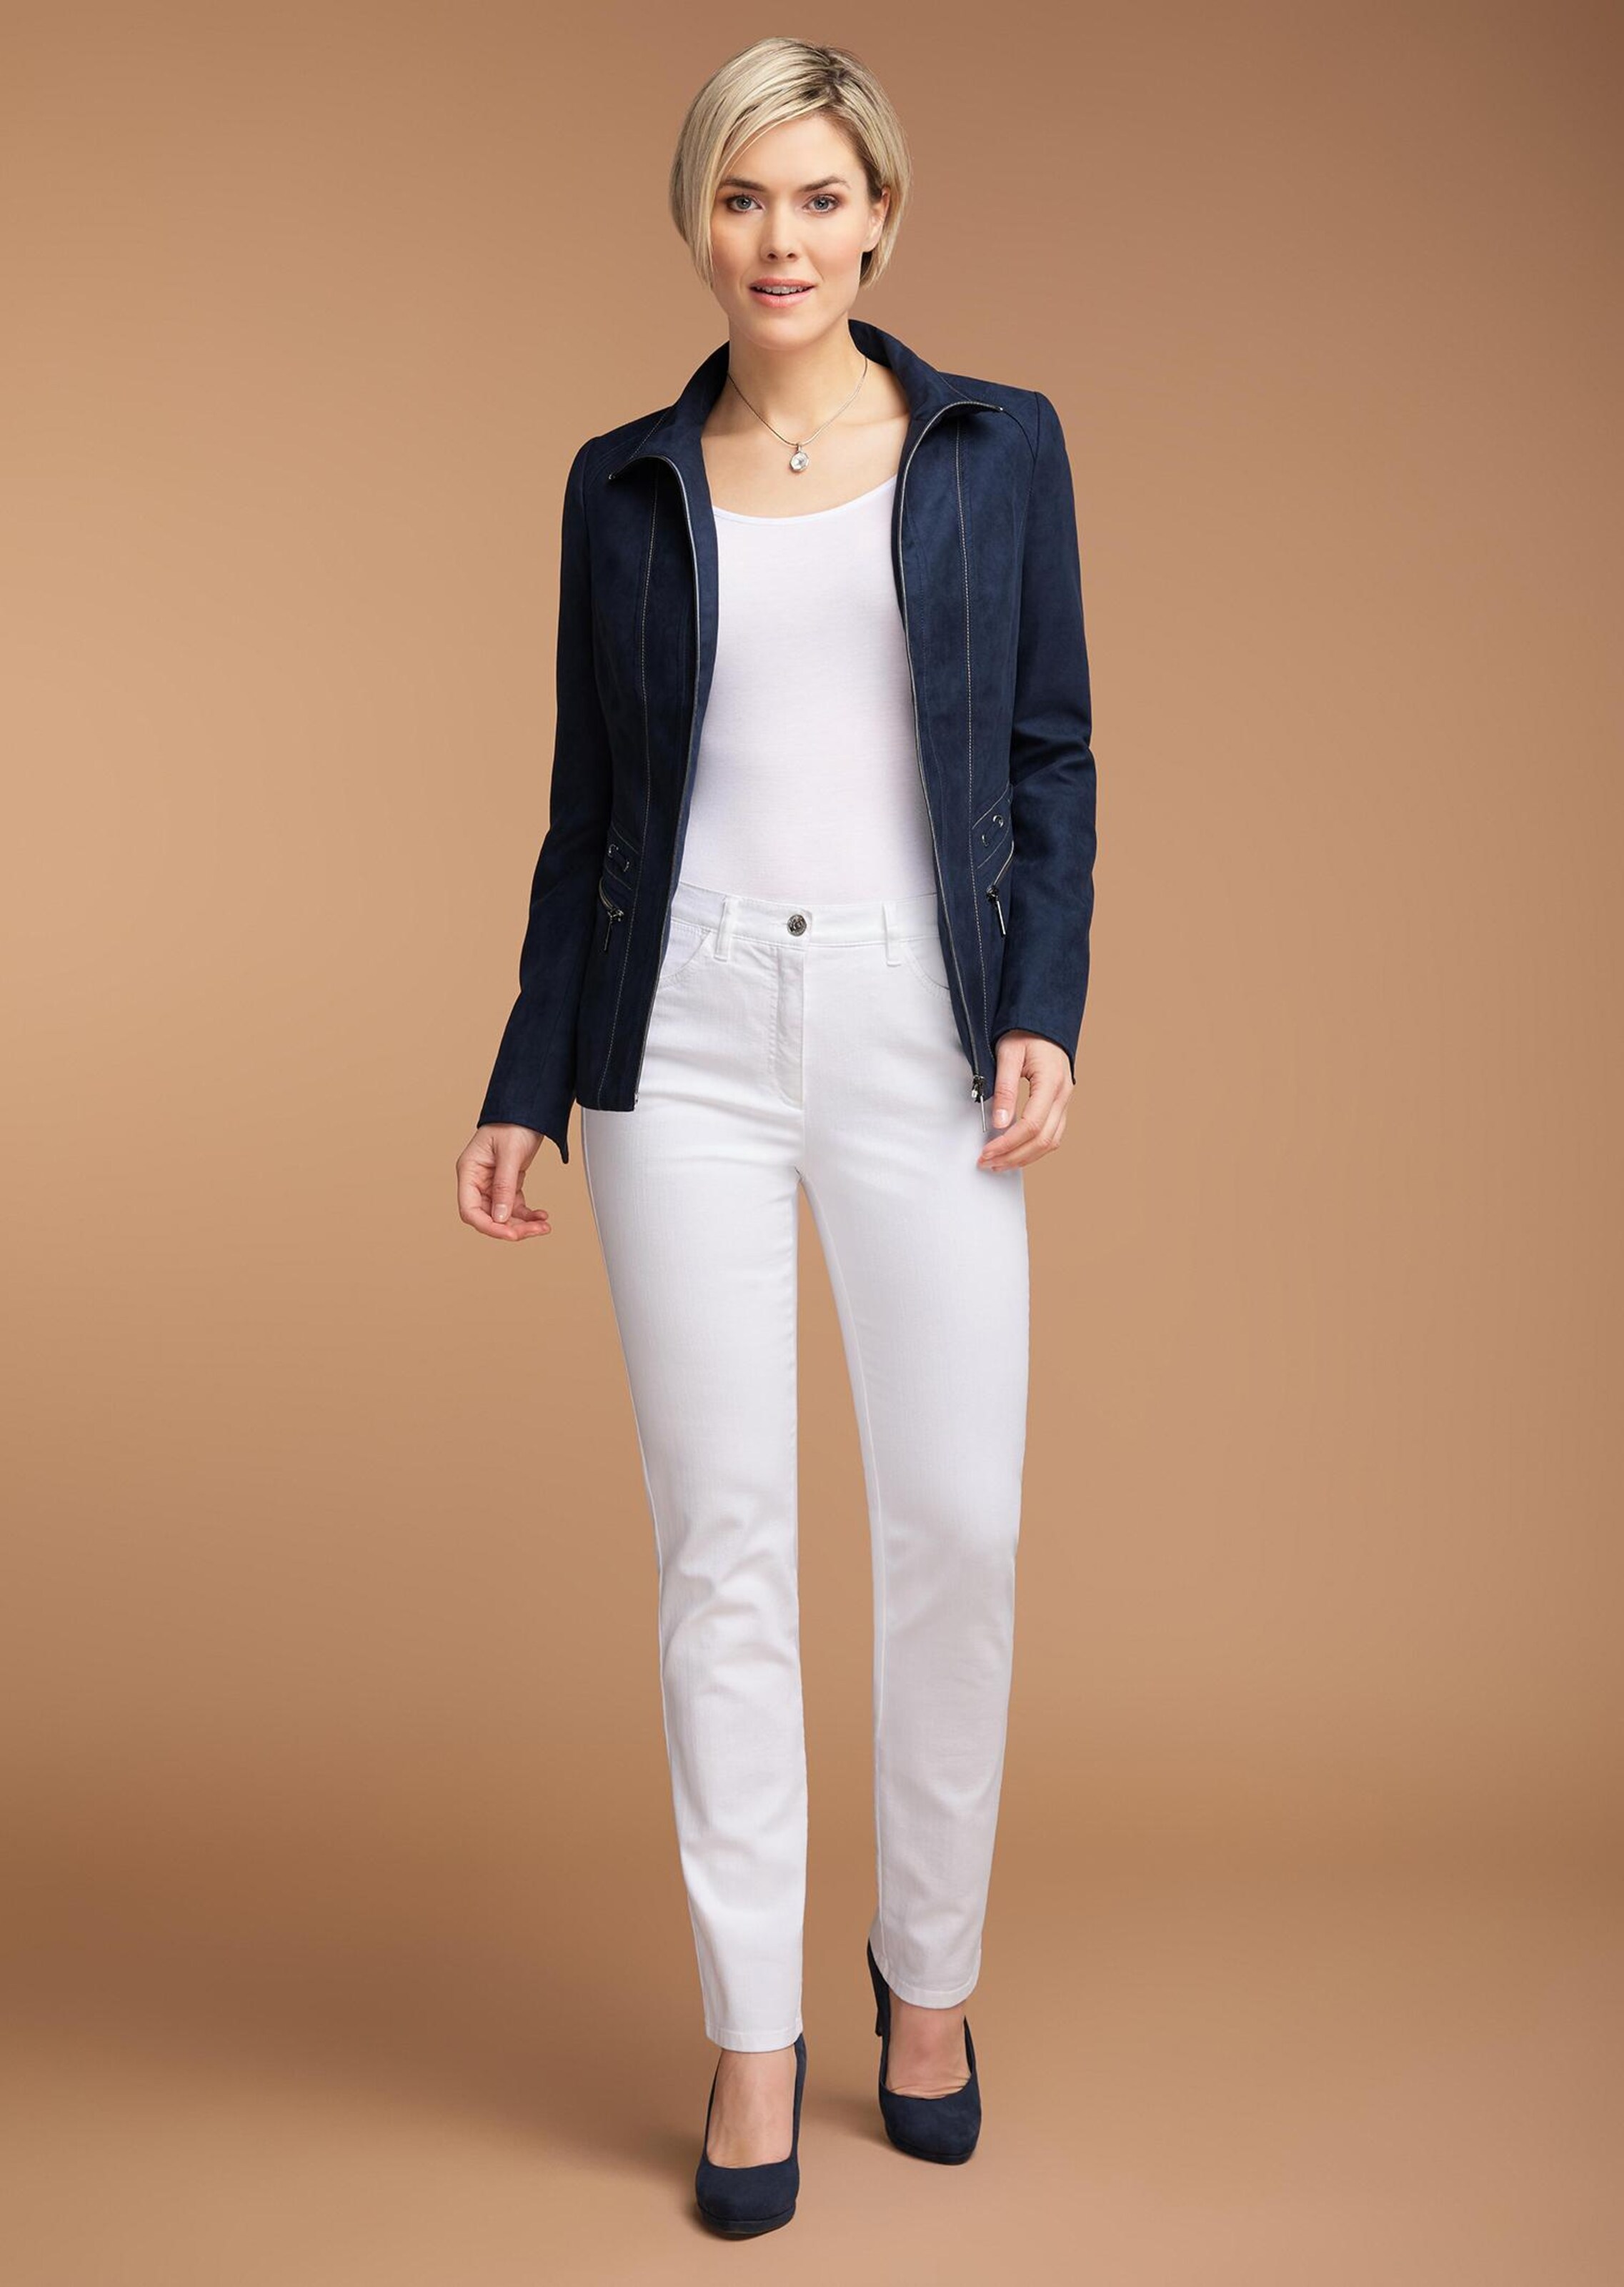 Goldner Fashion Chic versierde jeans Carla - wit 